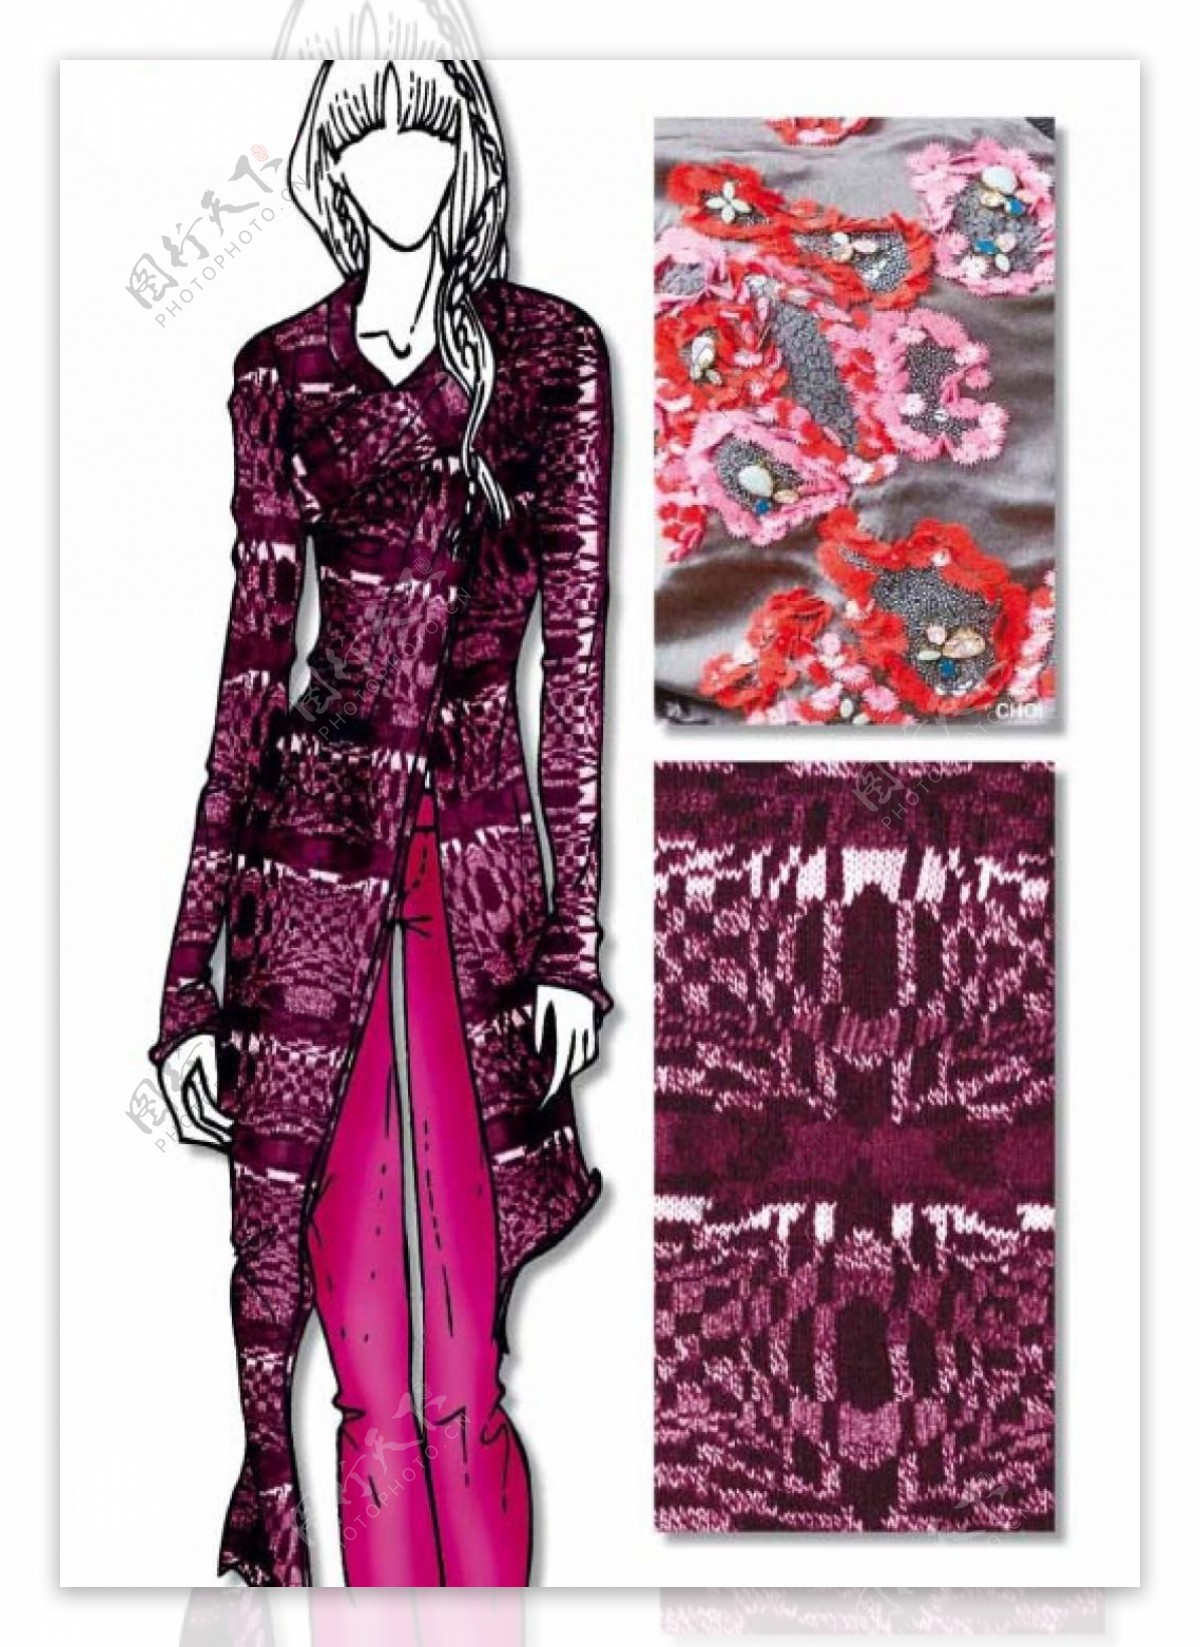 紫色长款女装设计与实物对比图